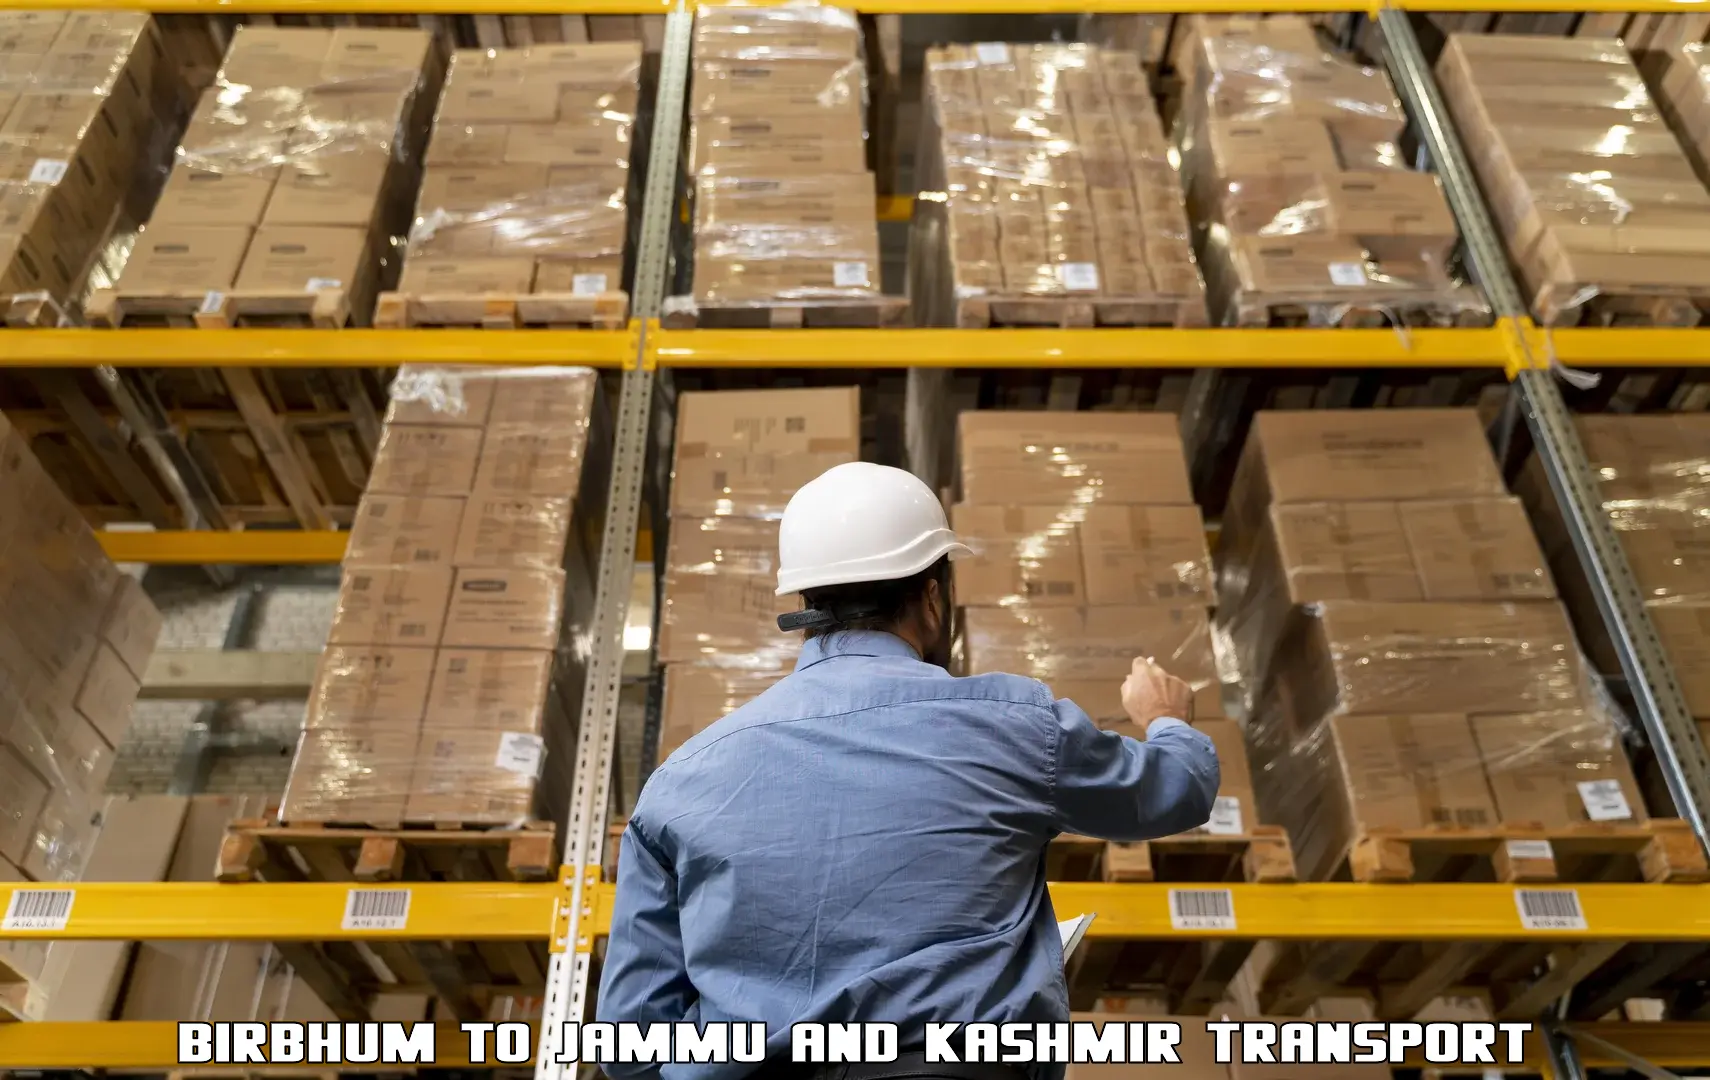 Truck transport companies in India Birbhum to Kupwara